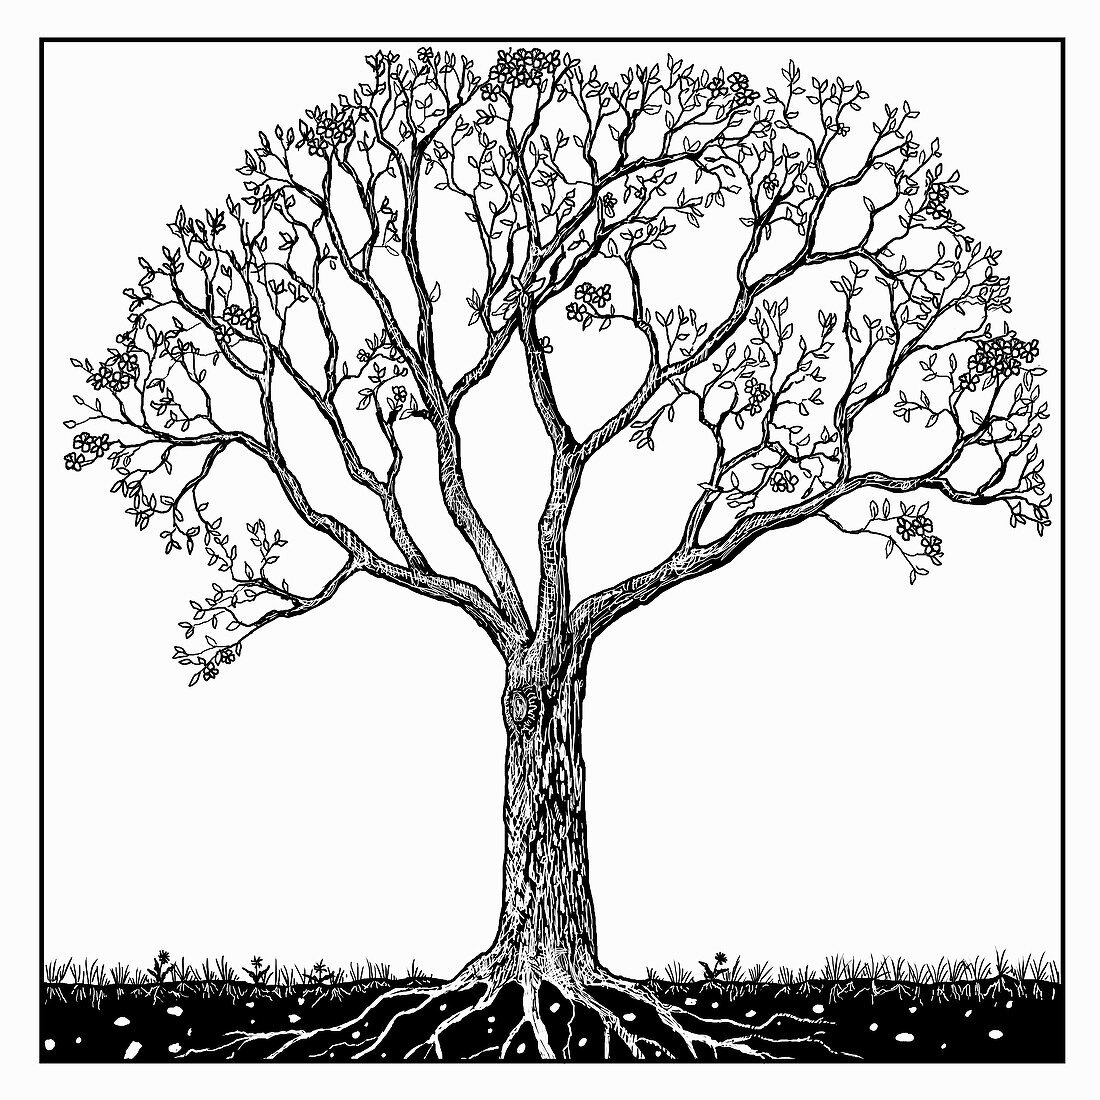 Tree in spring, illustration